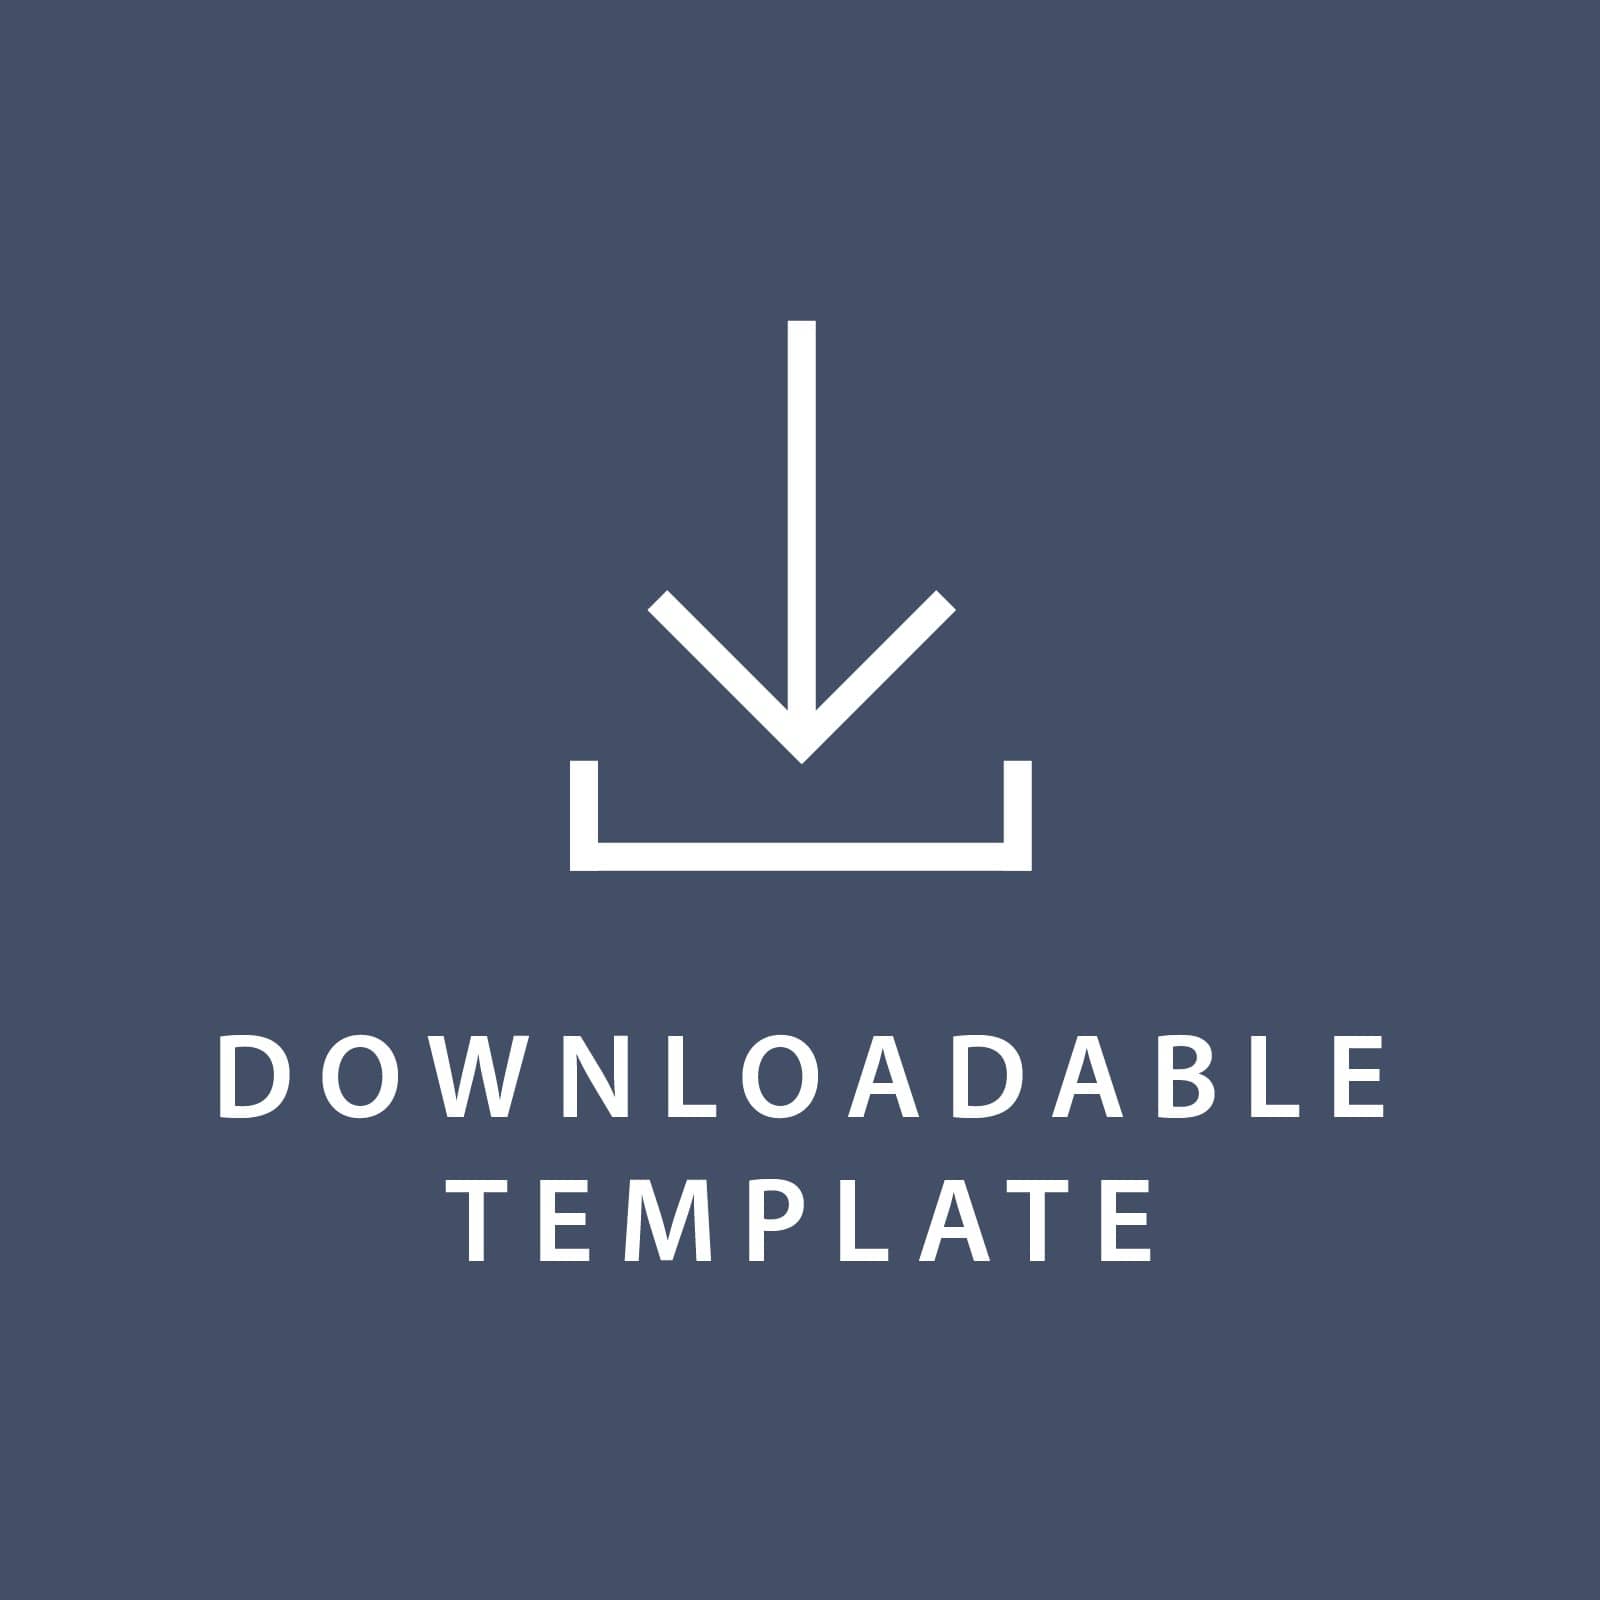 Template for 3.86 x 5.83 Invitations Gartner Studios Template tmplt0908